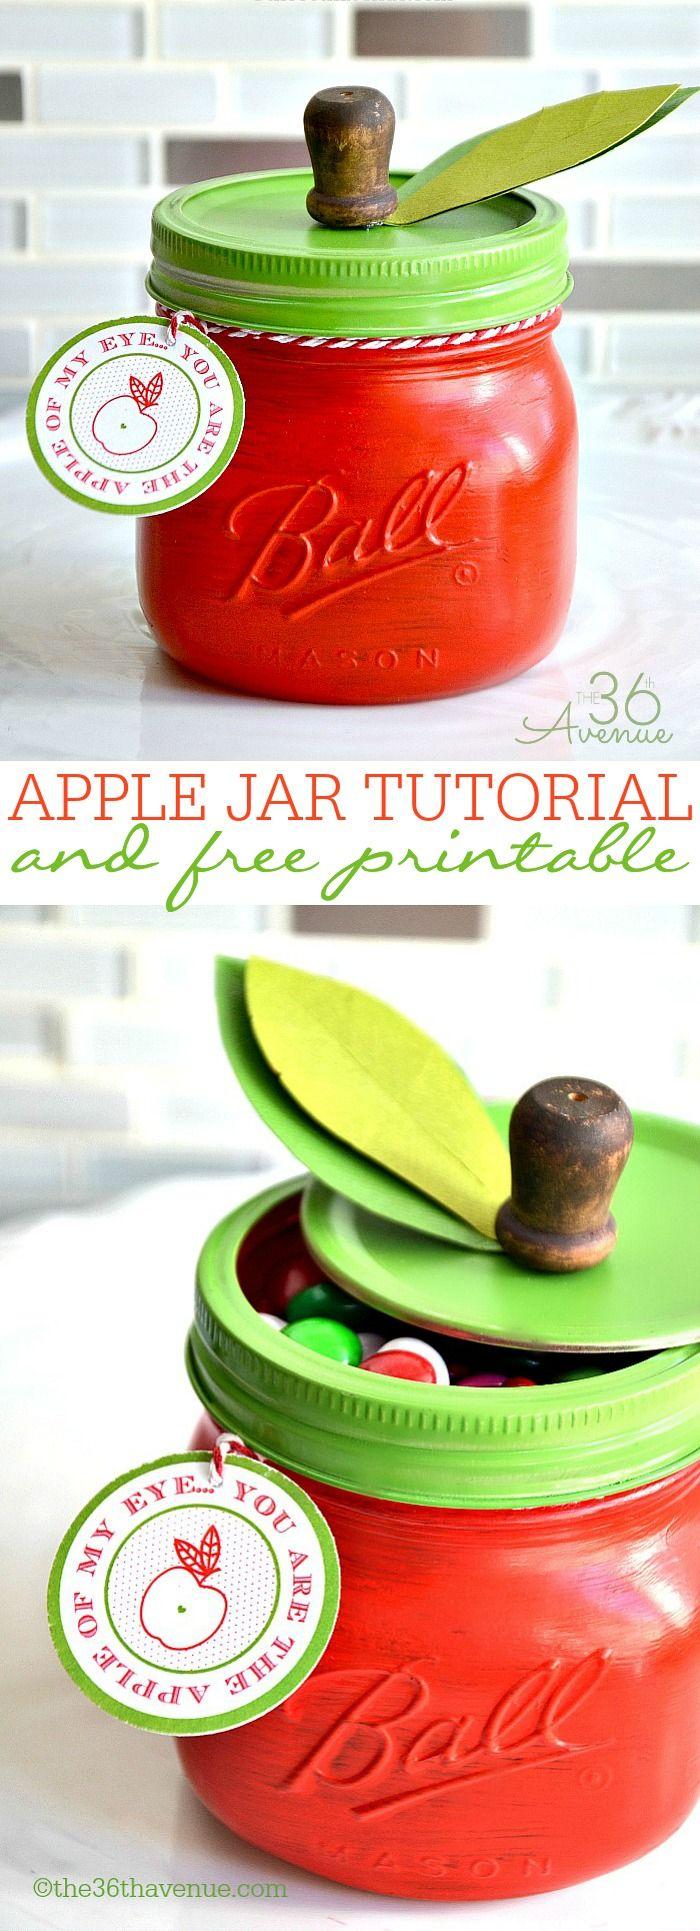 زفاف - Apple Jar And Free Printable